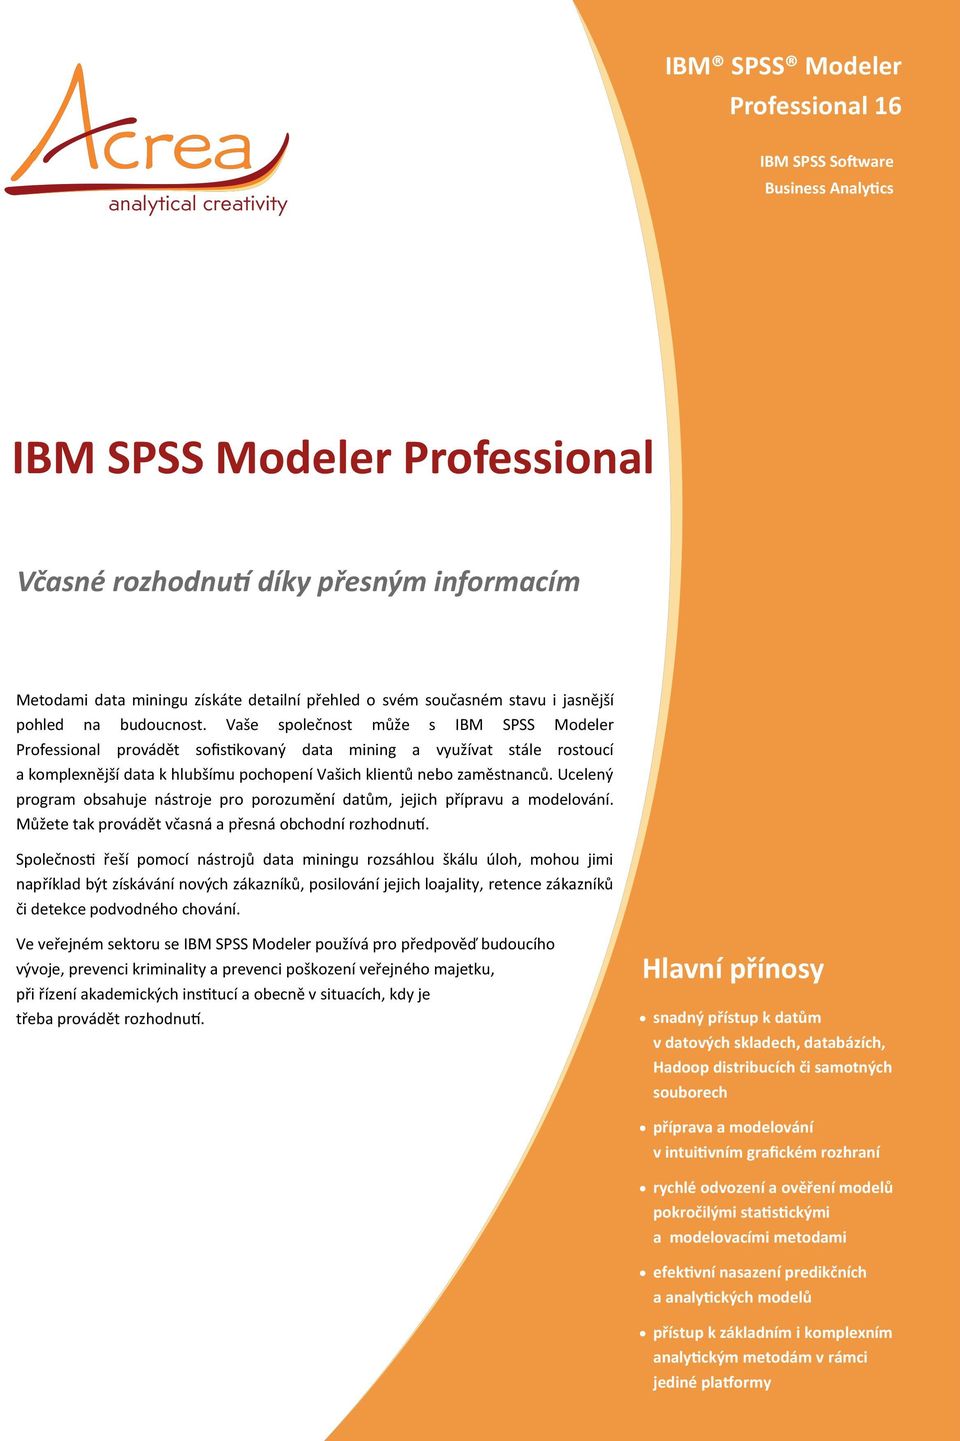 Vaše společnost může s IBM SPSS Modeler Professional provádět sofistikovaný data mining a využívat stále rostoucí a komplexnější data k hlubšímu pochopení Vašich klientů nebo zaměstnanců.